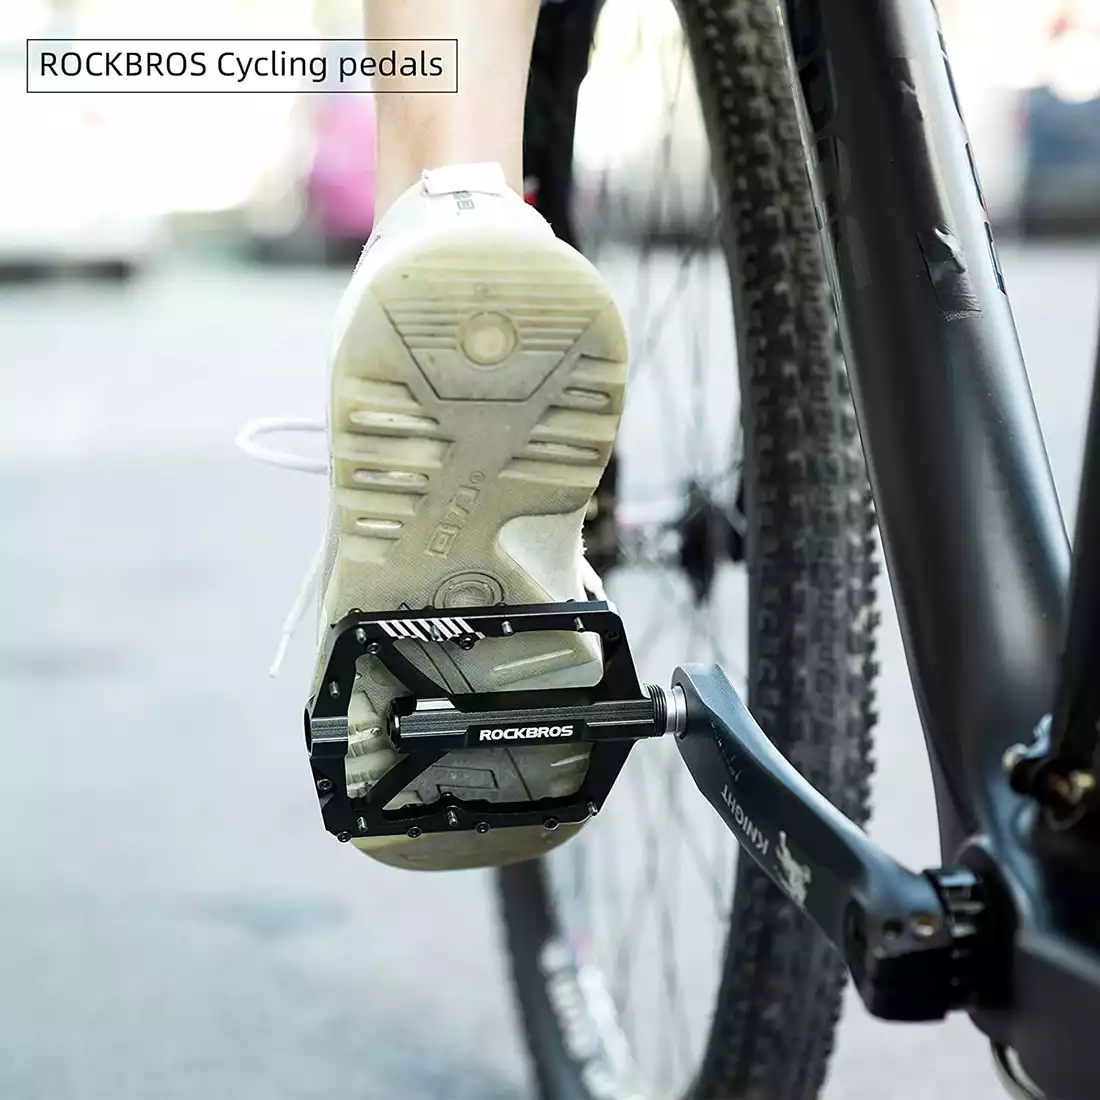 ROCKBROS 2018-12BBK Platform kerékpár pedálok, alumínium, fekete